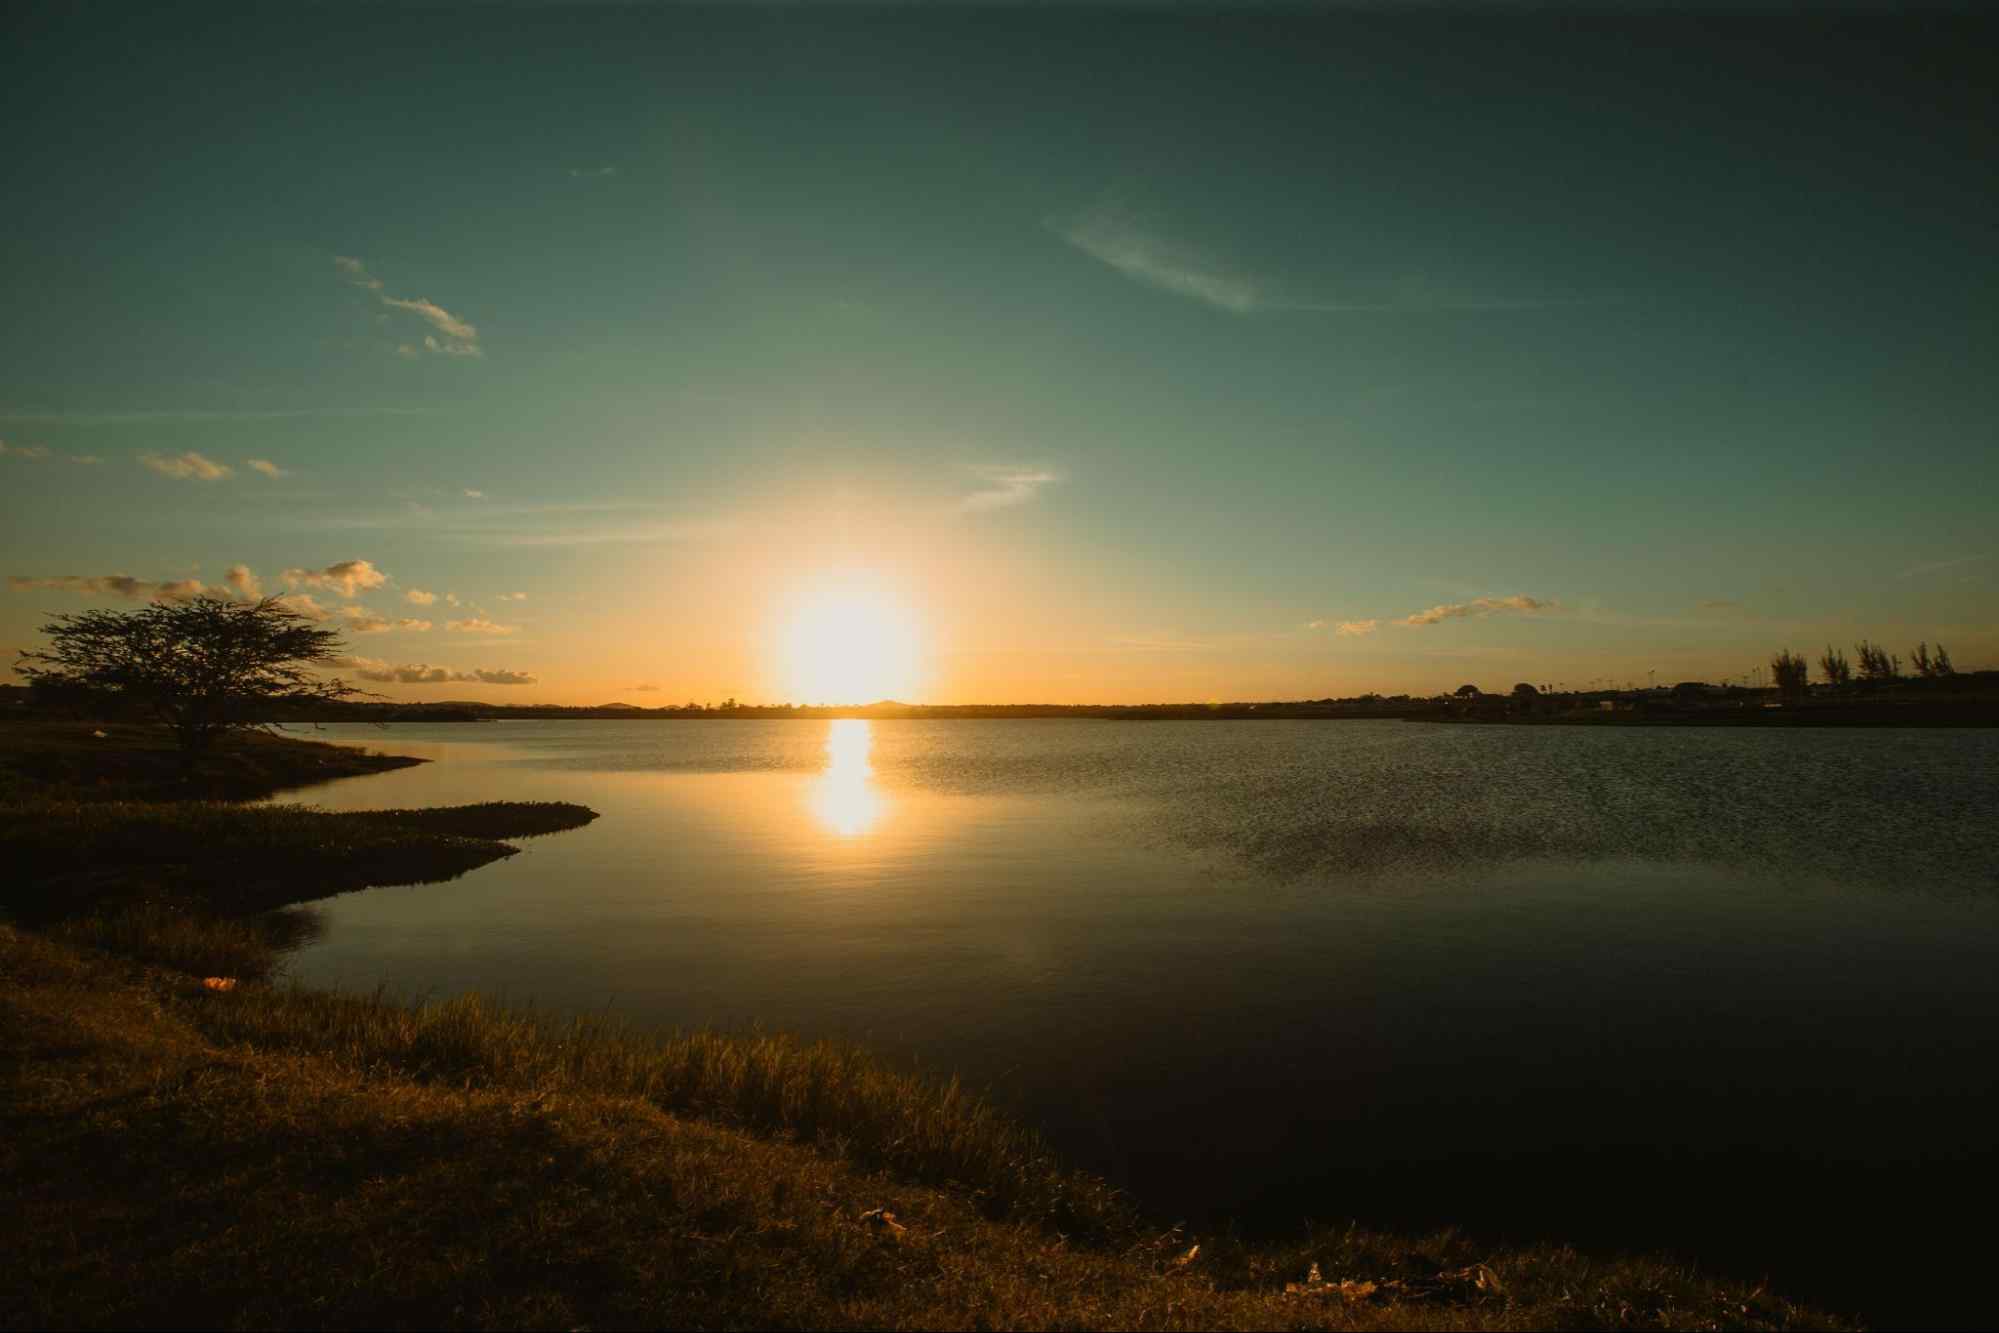 Pôr do sol no Lago Perucaba. Luz amarela refletindo nas águas calmas, com céu quase sem nuvens